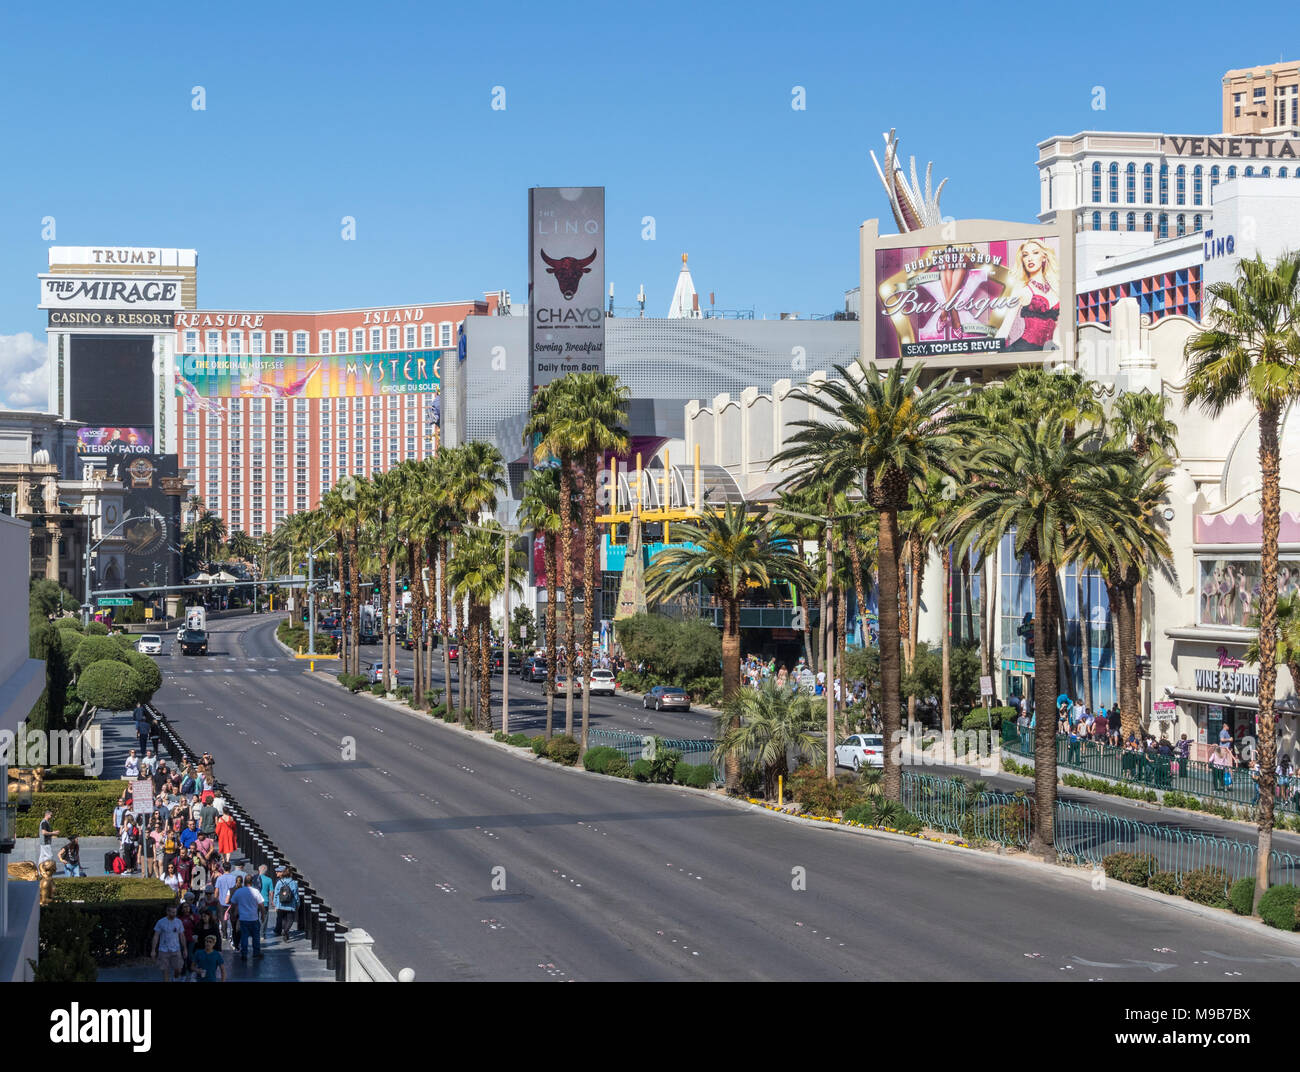 Las Vegas Boulevard di Las Vegas, Nevada. Il più famoso tratto di Las Vegas Blvd è conosciuto come 'Nastro' - Elegante hotel casino. Foto Stock